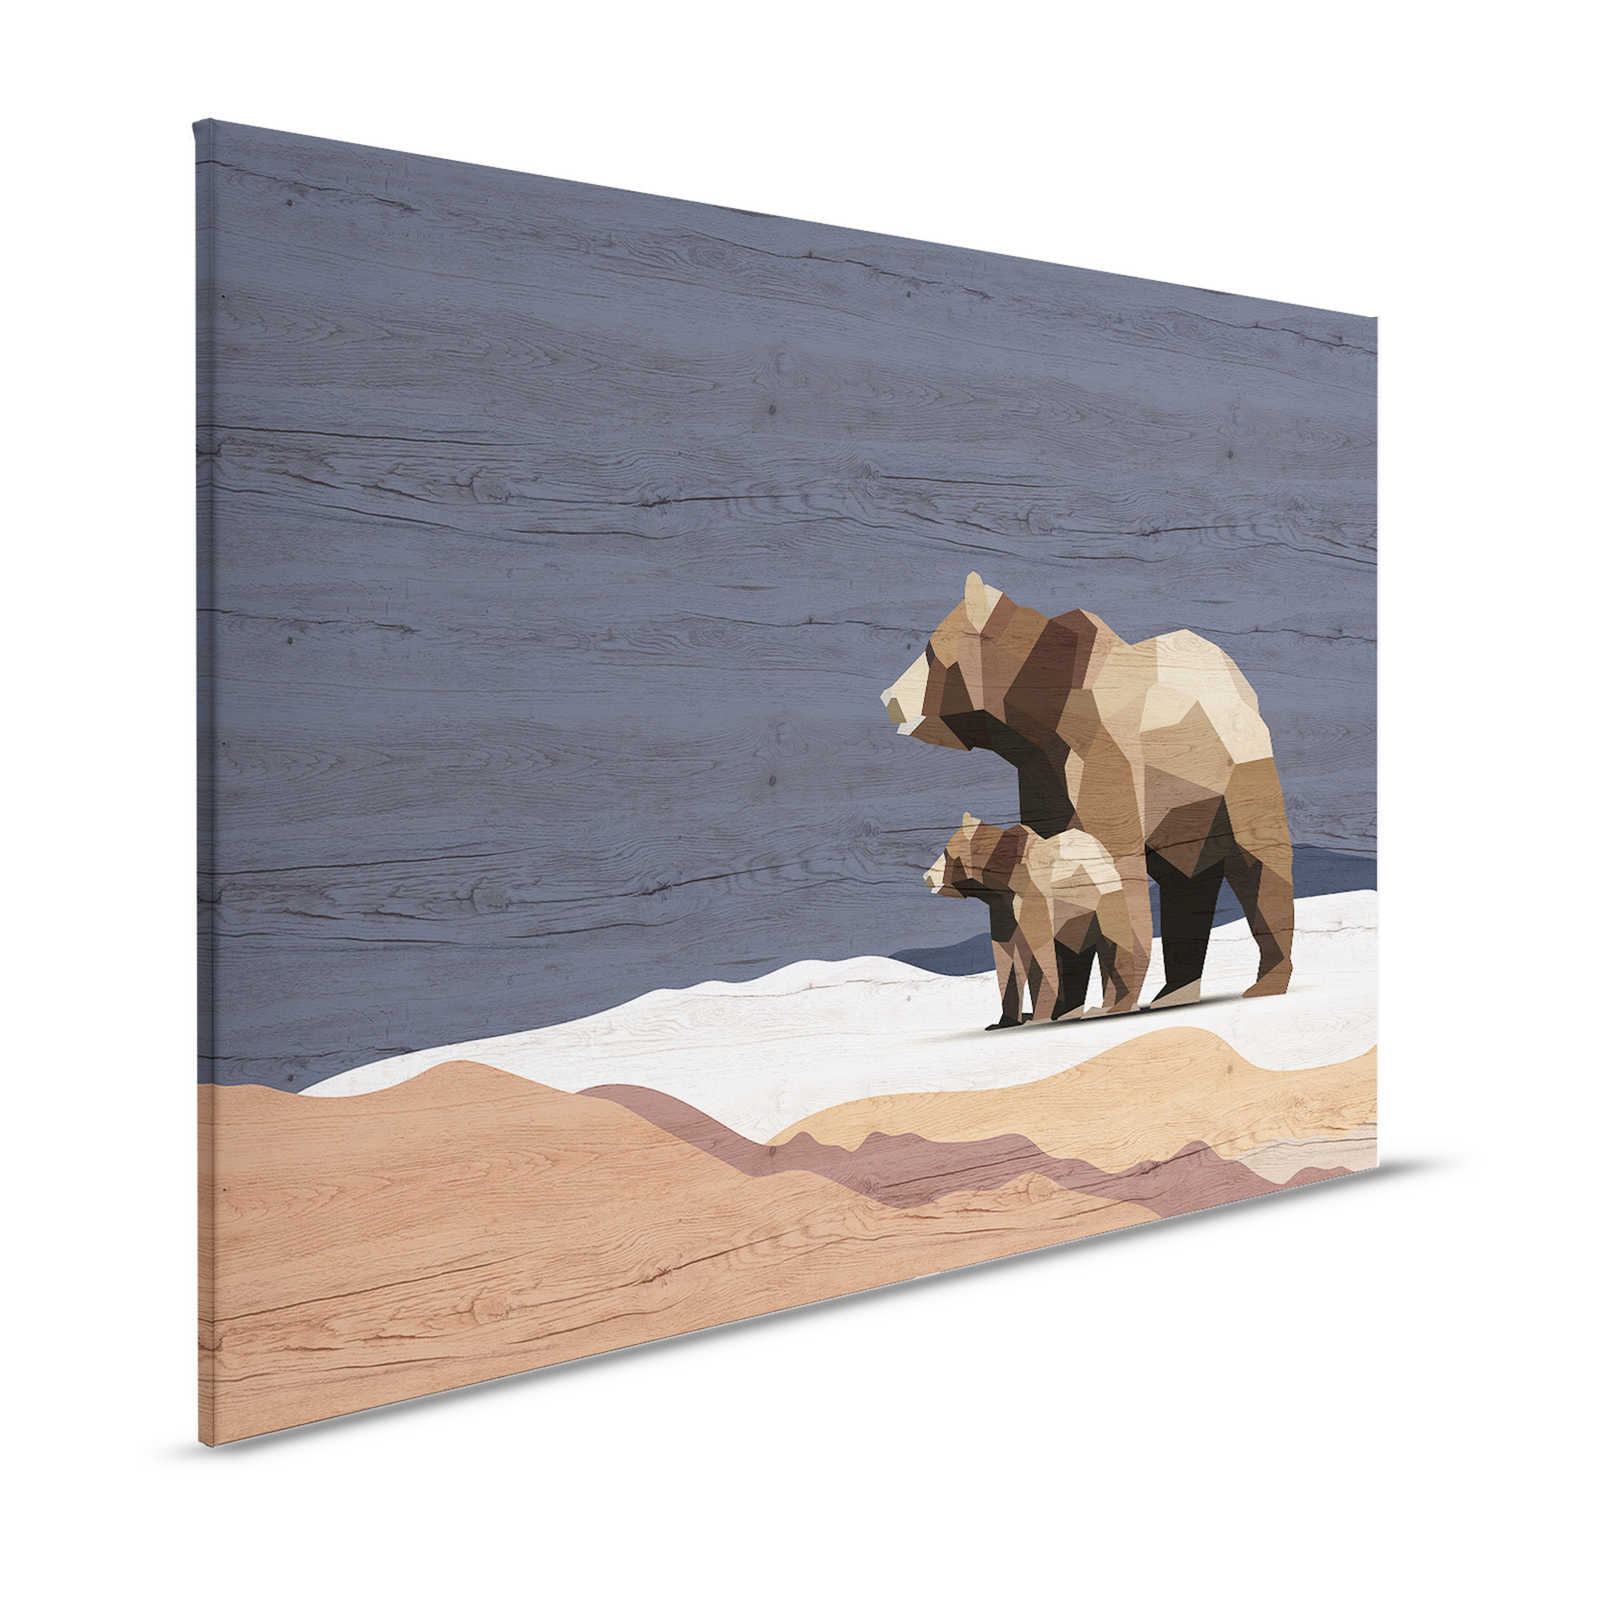 Yukon 3 - Toile Famille d'ours à facettes & aspect bois - 1,20 m x 0,80 m
